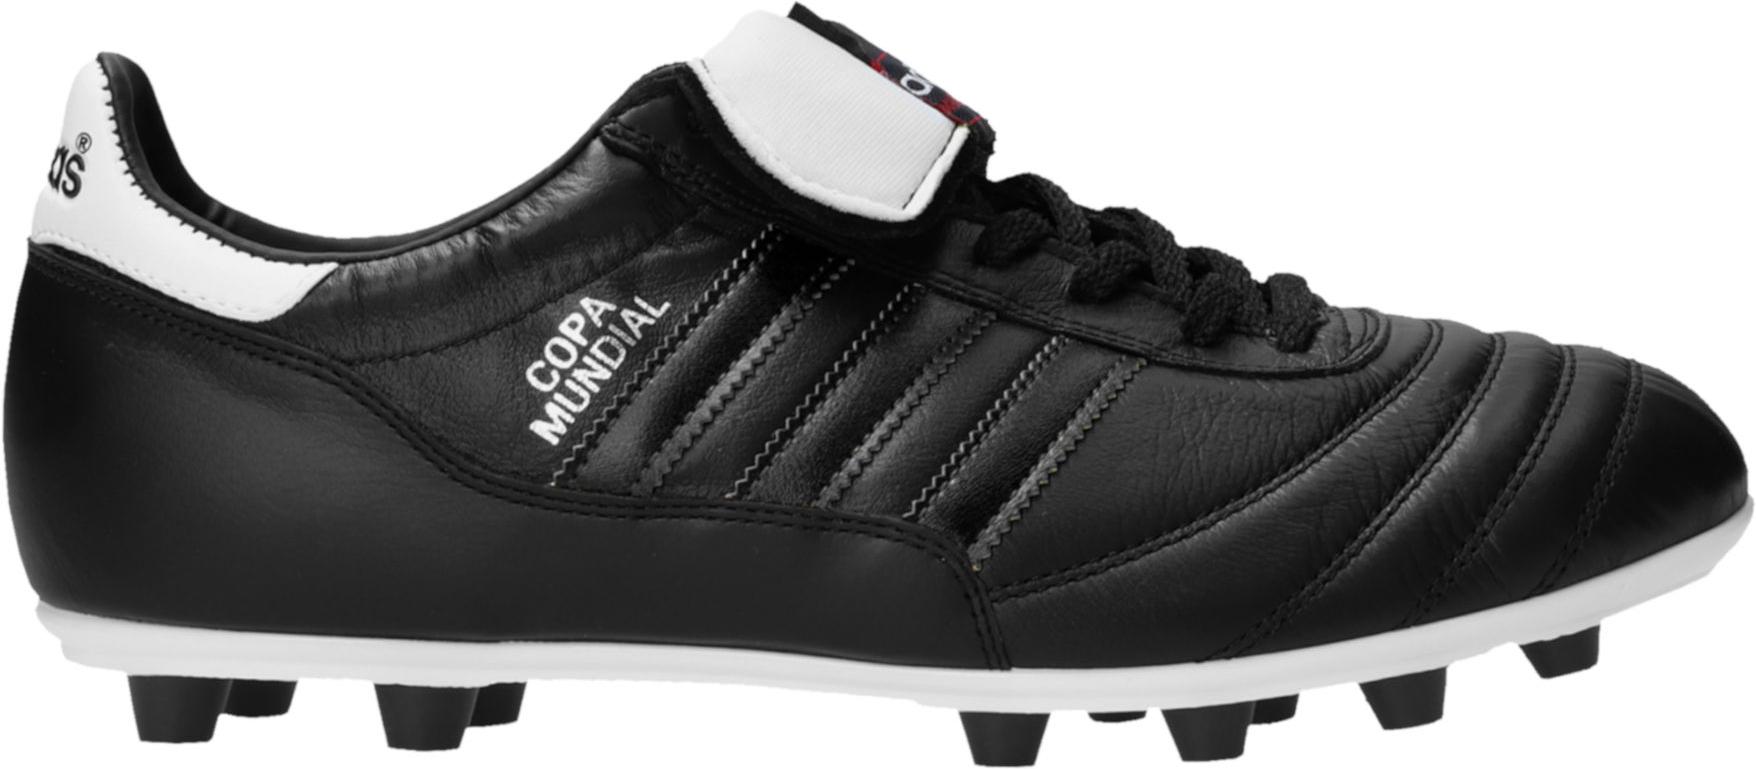 Ποδοσφαιρικά παπούτσια adidas Copa Mundial FG